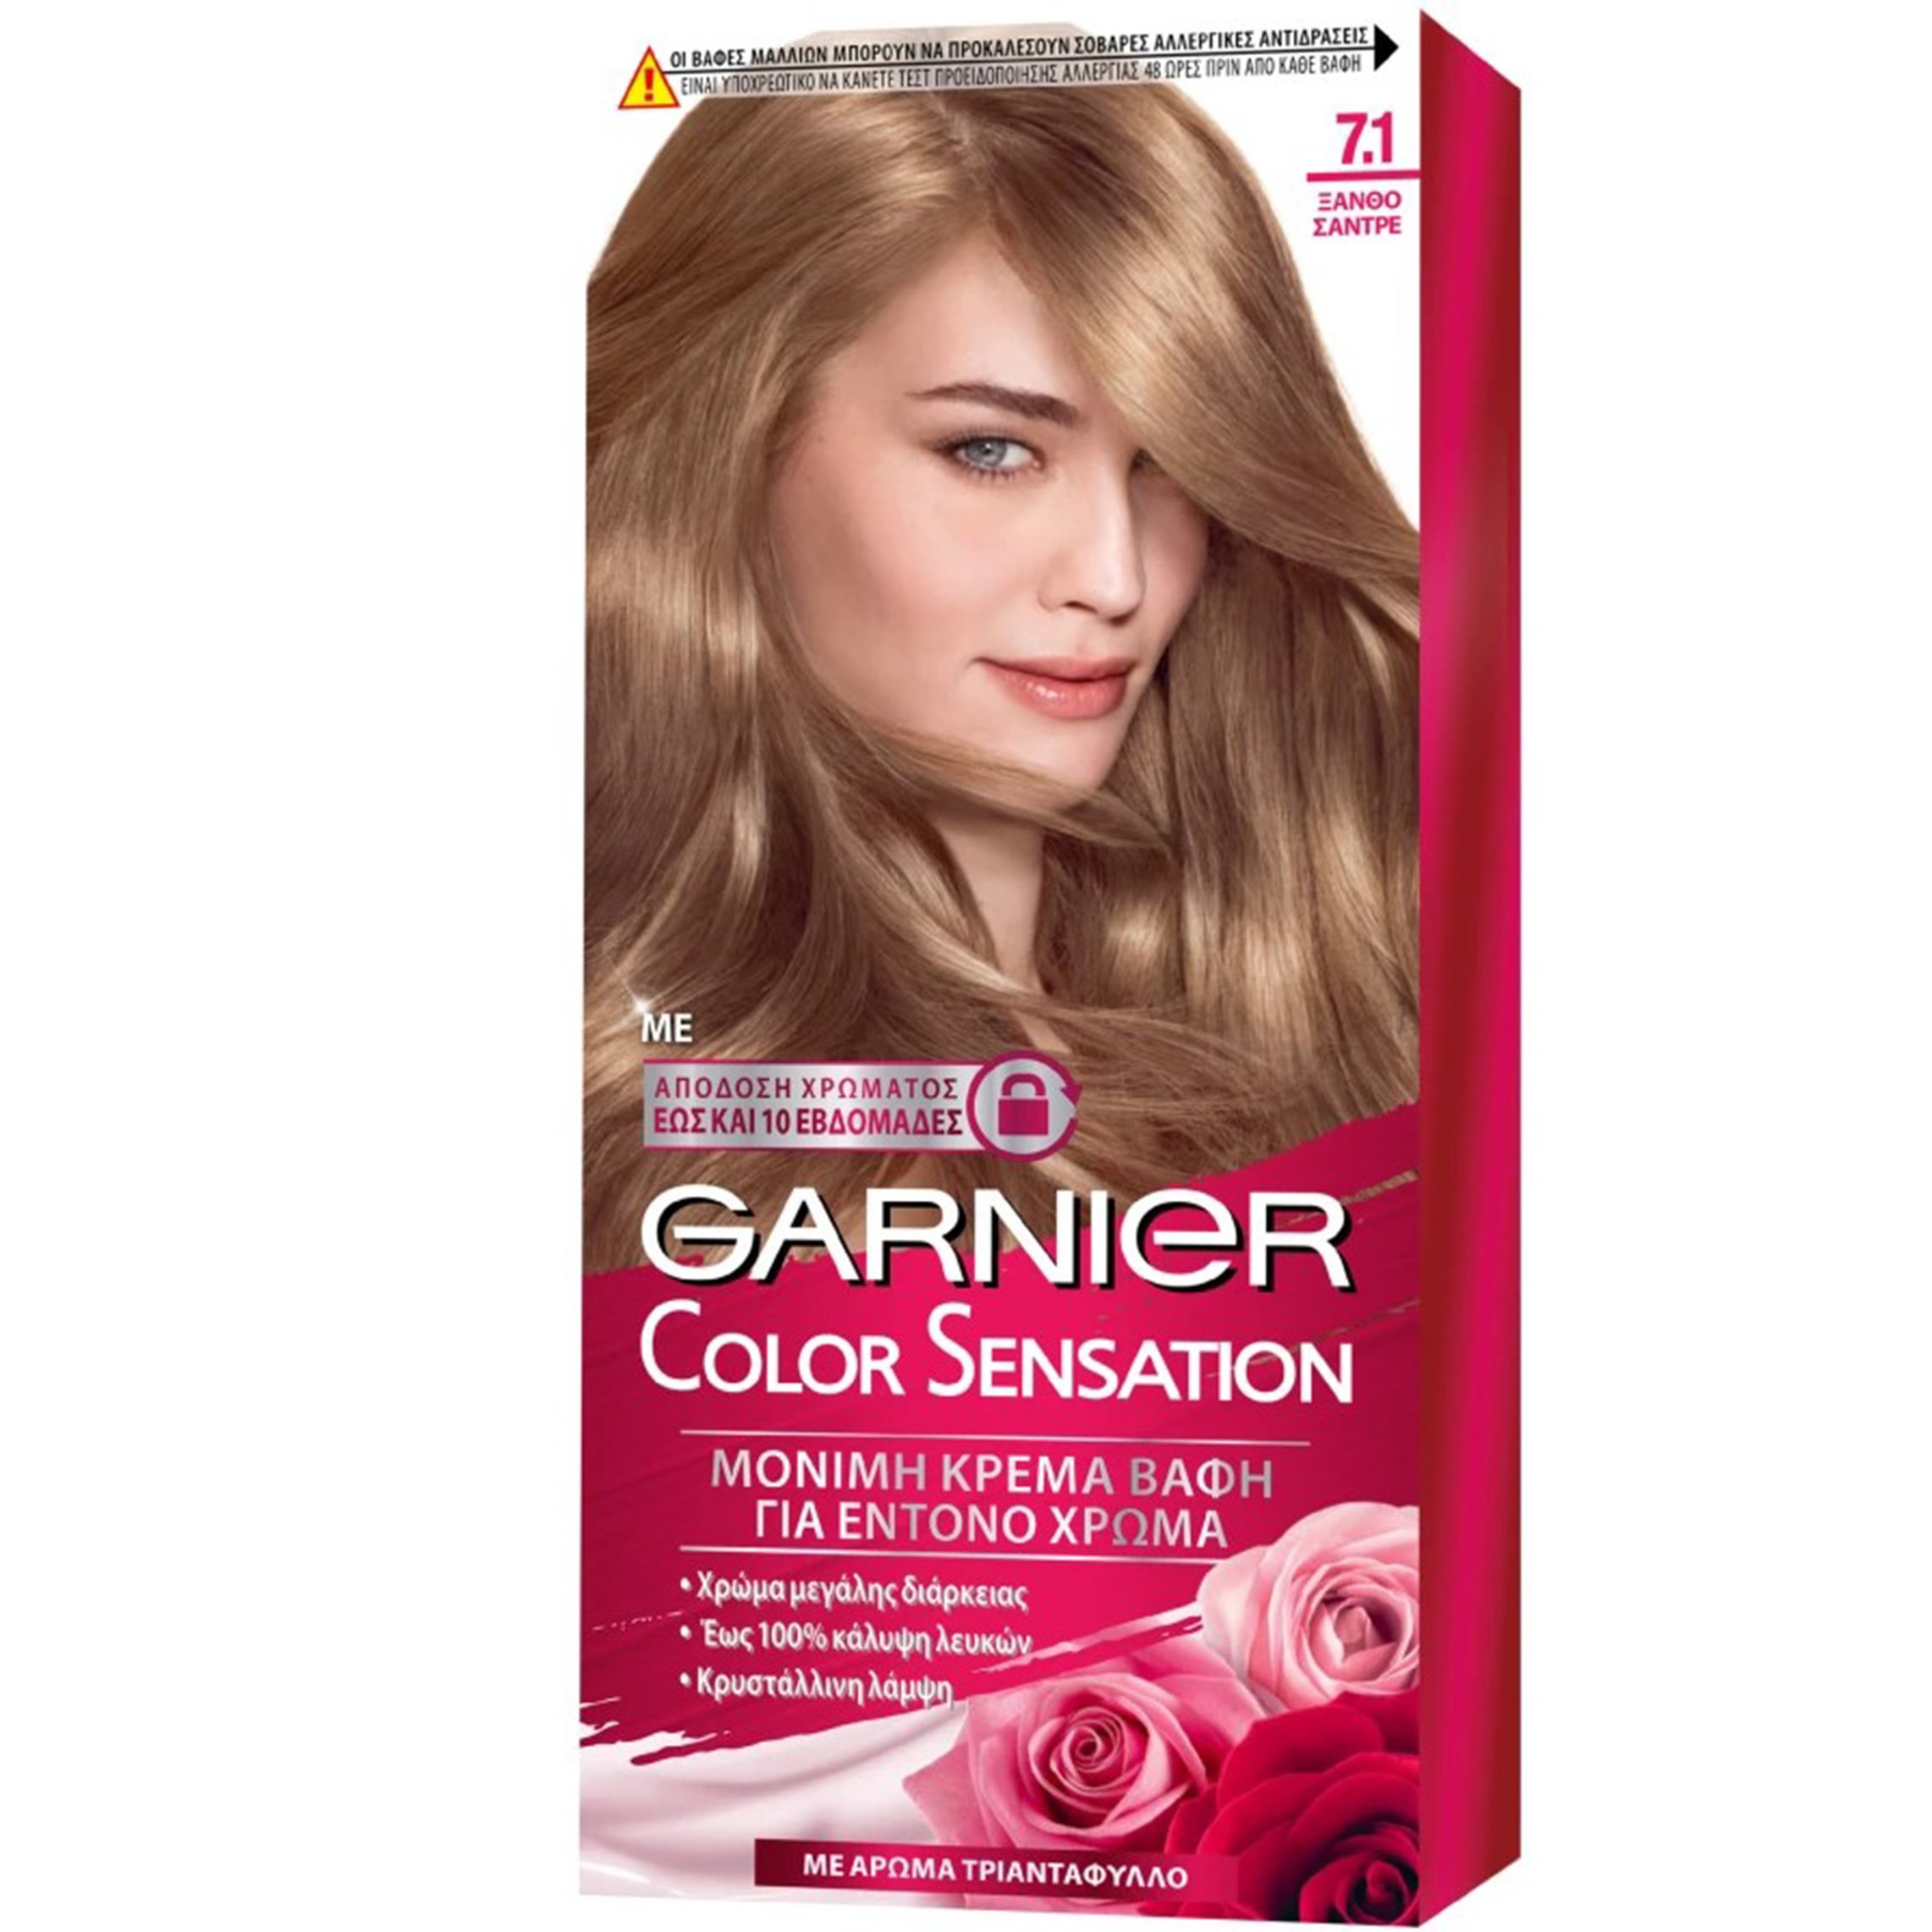 Garnier Color Sensation Permanent Hair Color Kit Μόνιμη Κρέμα Βαφή Μαλλιών με Άρωμα Τριαντάφυλλο 1 Τεμάχιο – 7.1 Ξανθό Σαντρέ